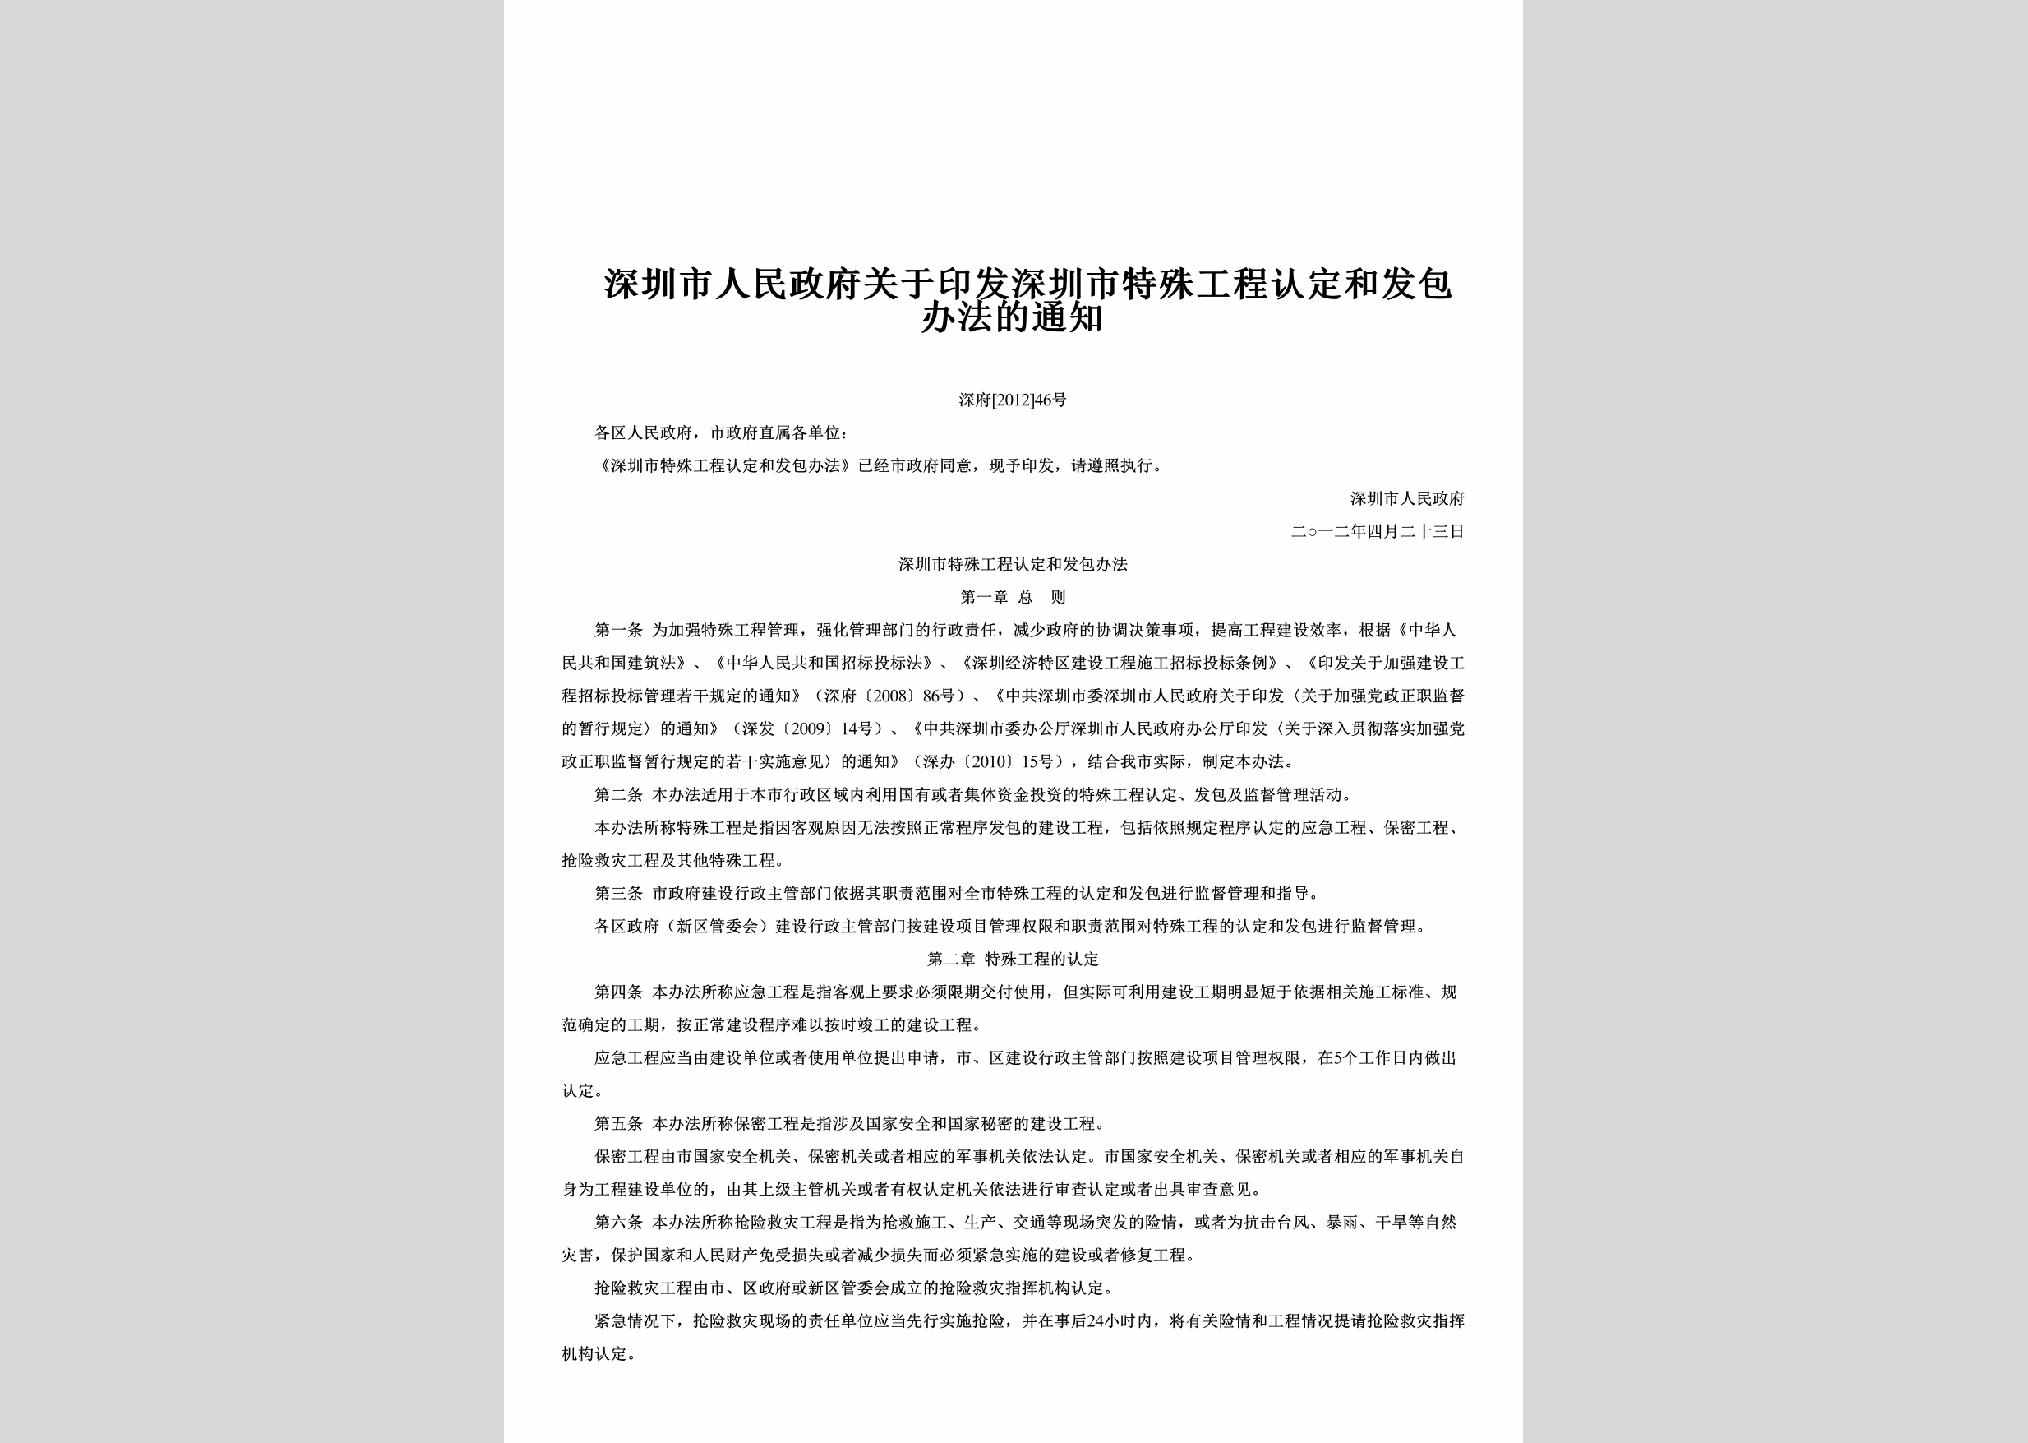 深府[2012]46号：关于印发深圳市特殊工程认定和发包办法的通知